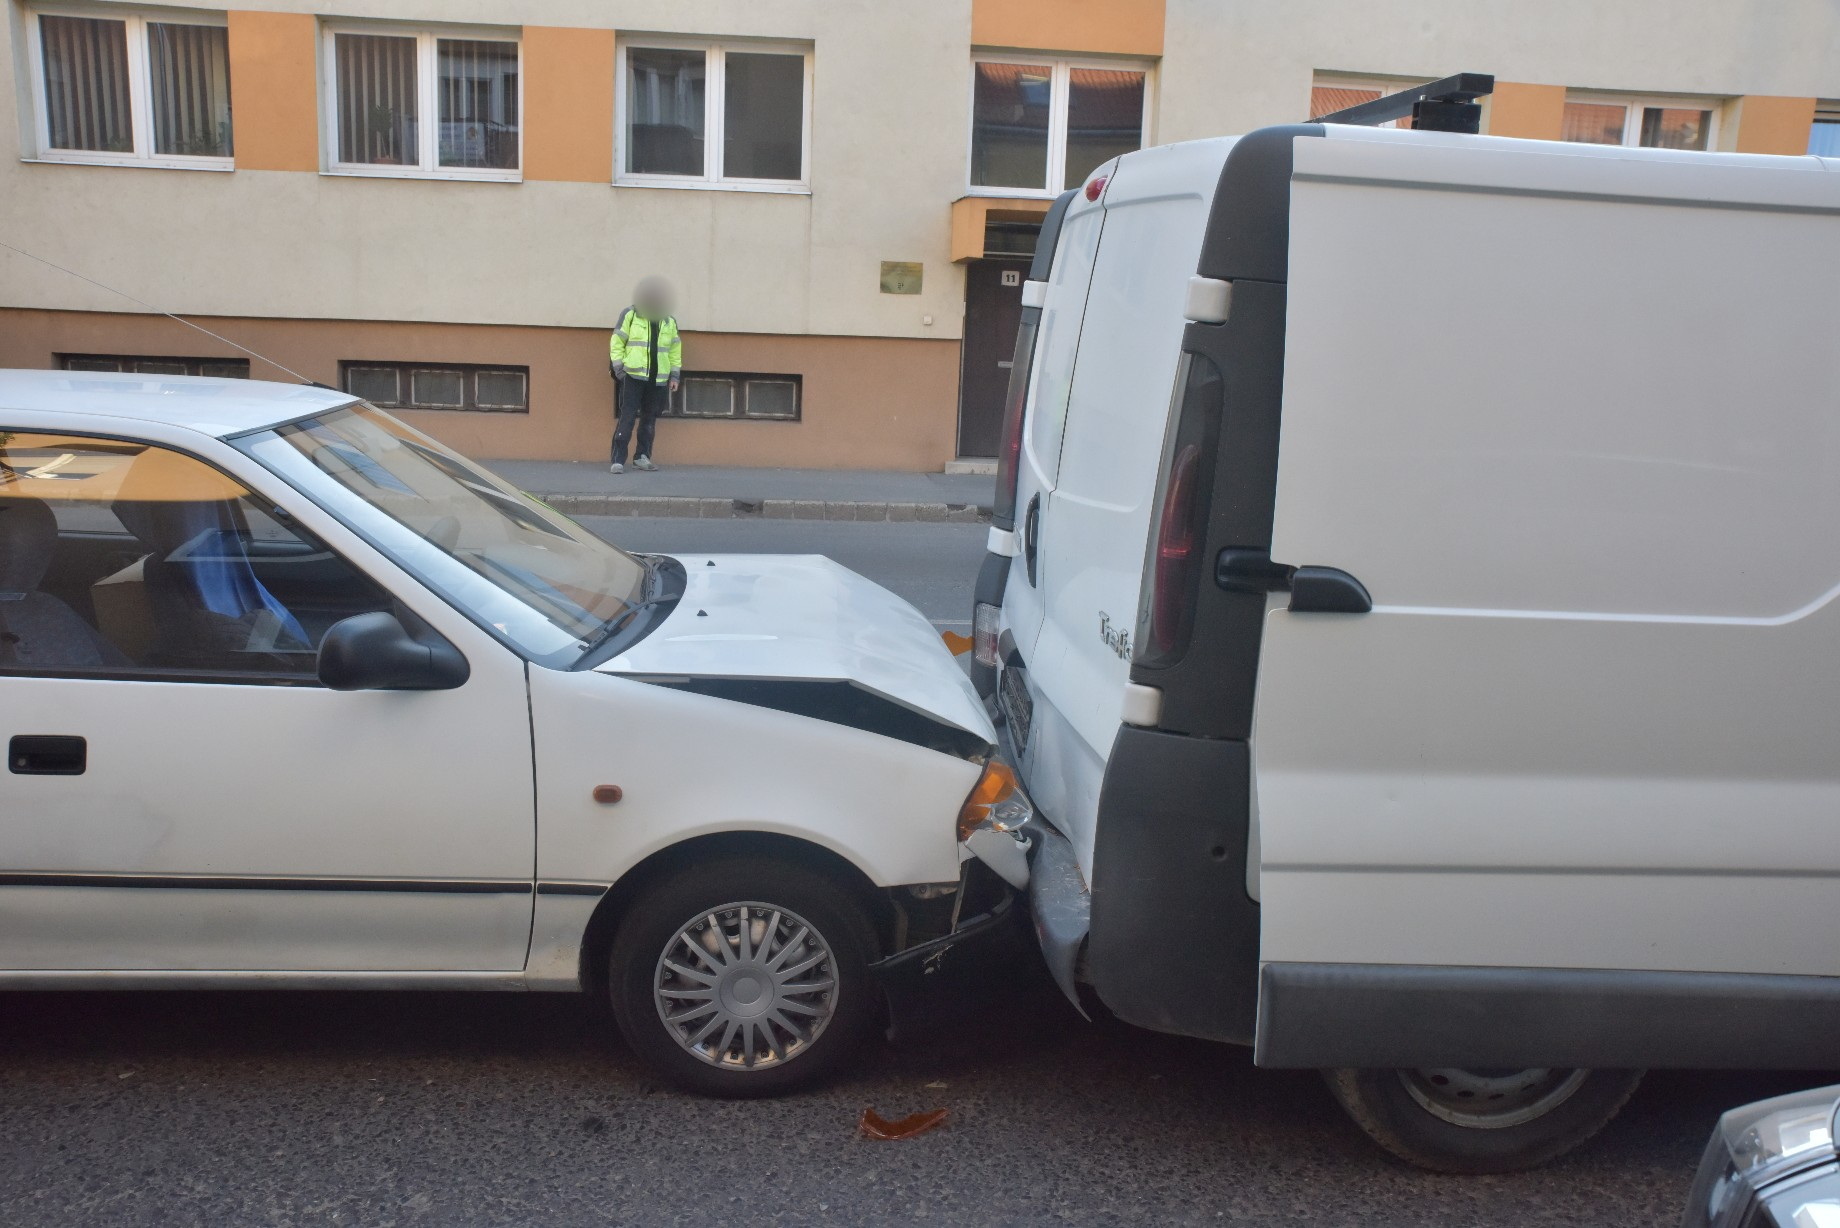 Kocsisort tolt össze Suzuki Szombathelyen - az okozó sérült meg a balesetben